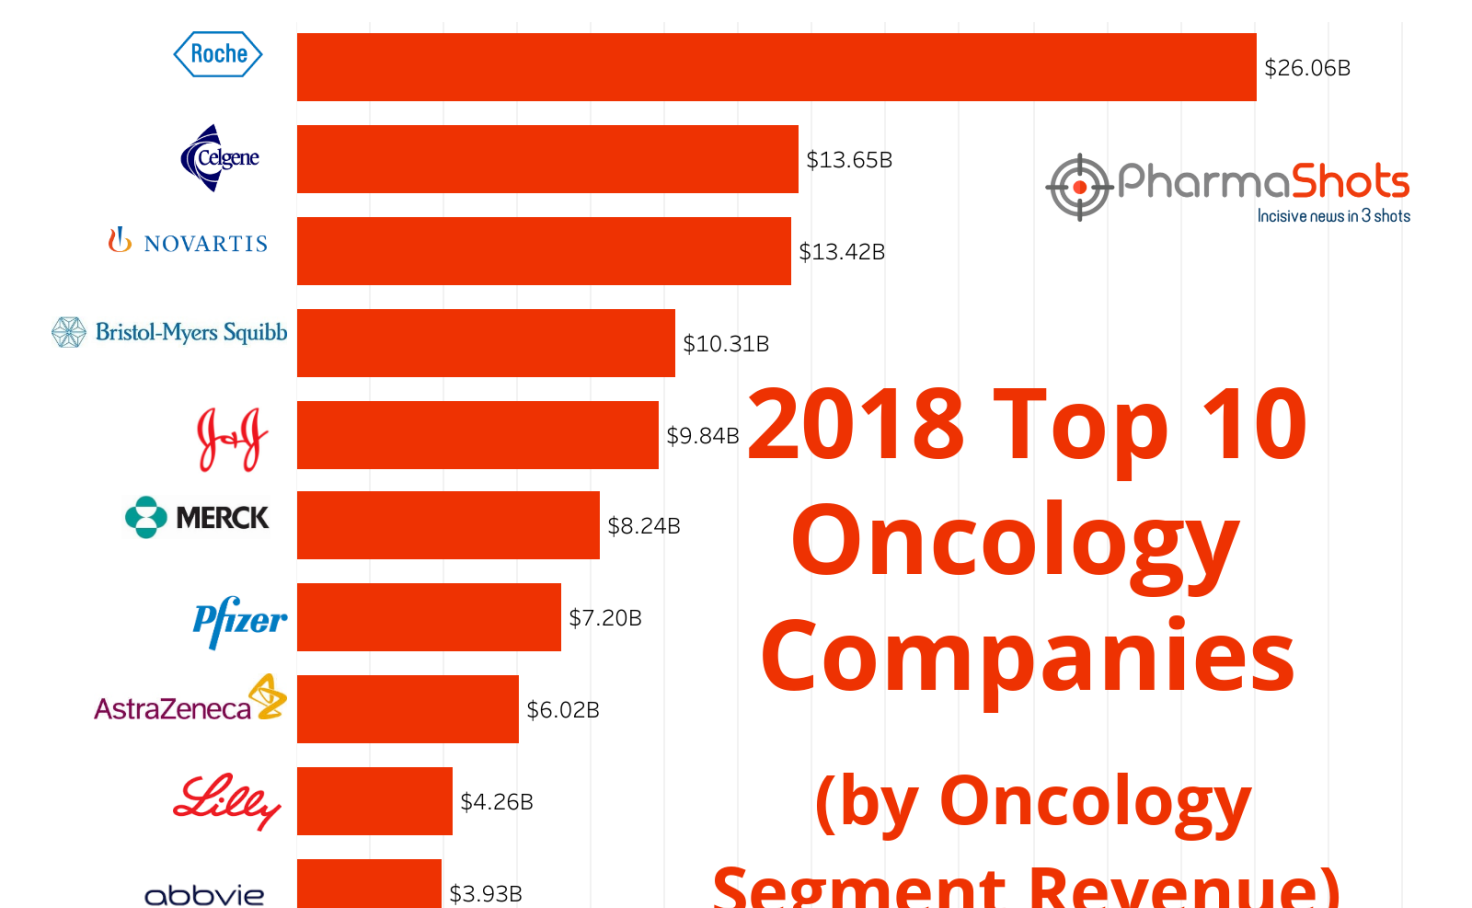 Top 10 Oncology Companies by 2018 Revenue Tableau Public